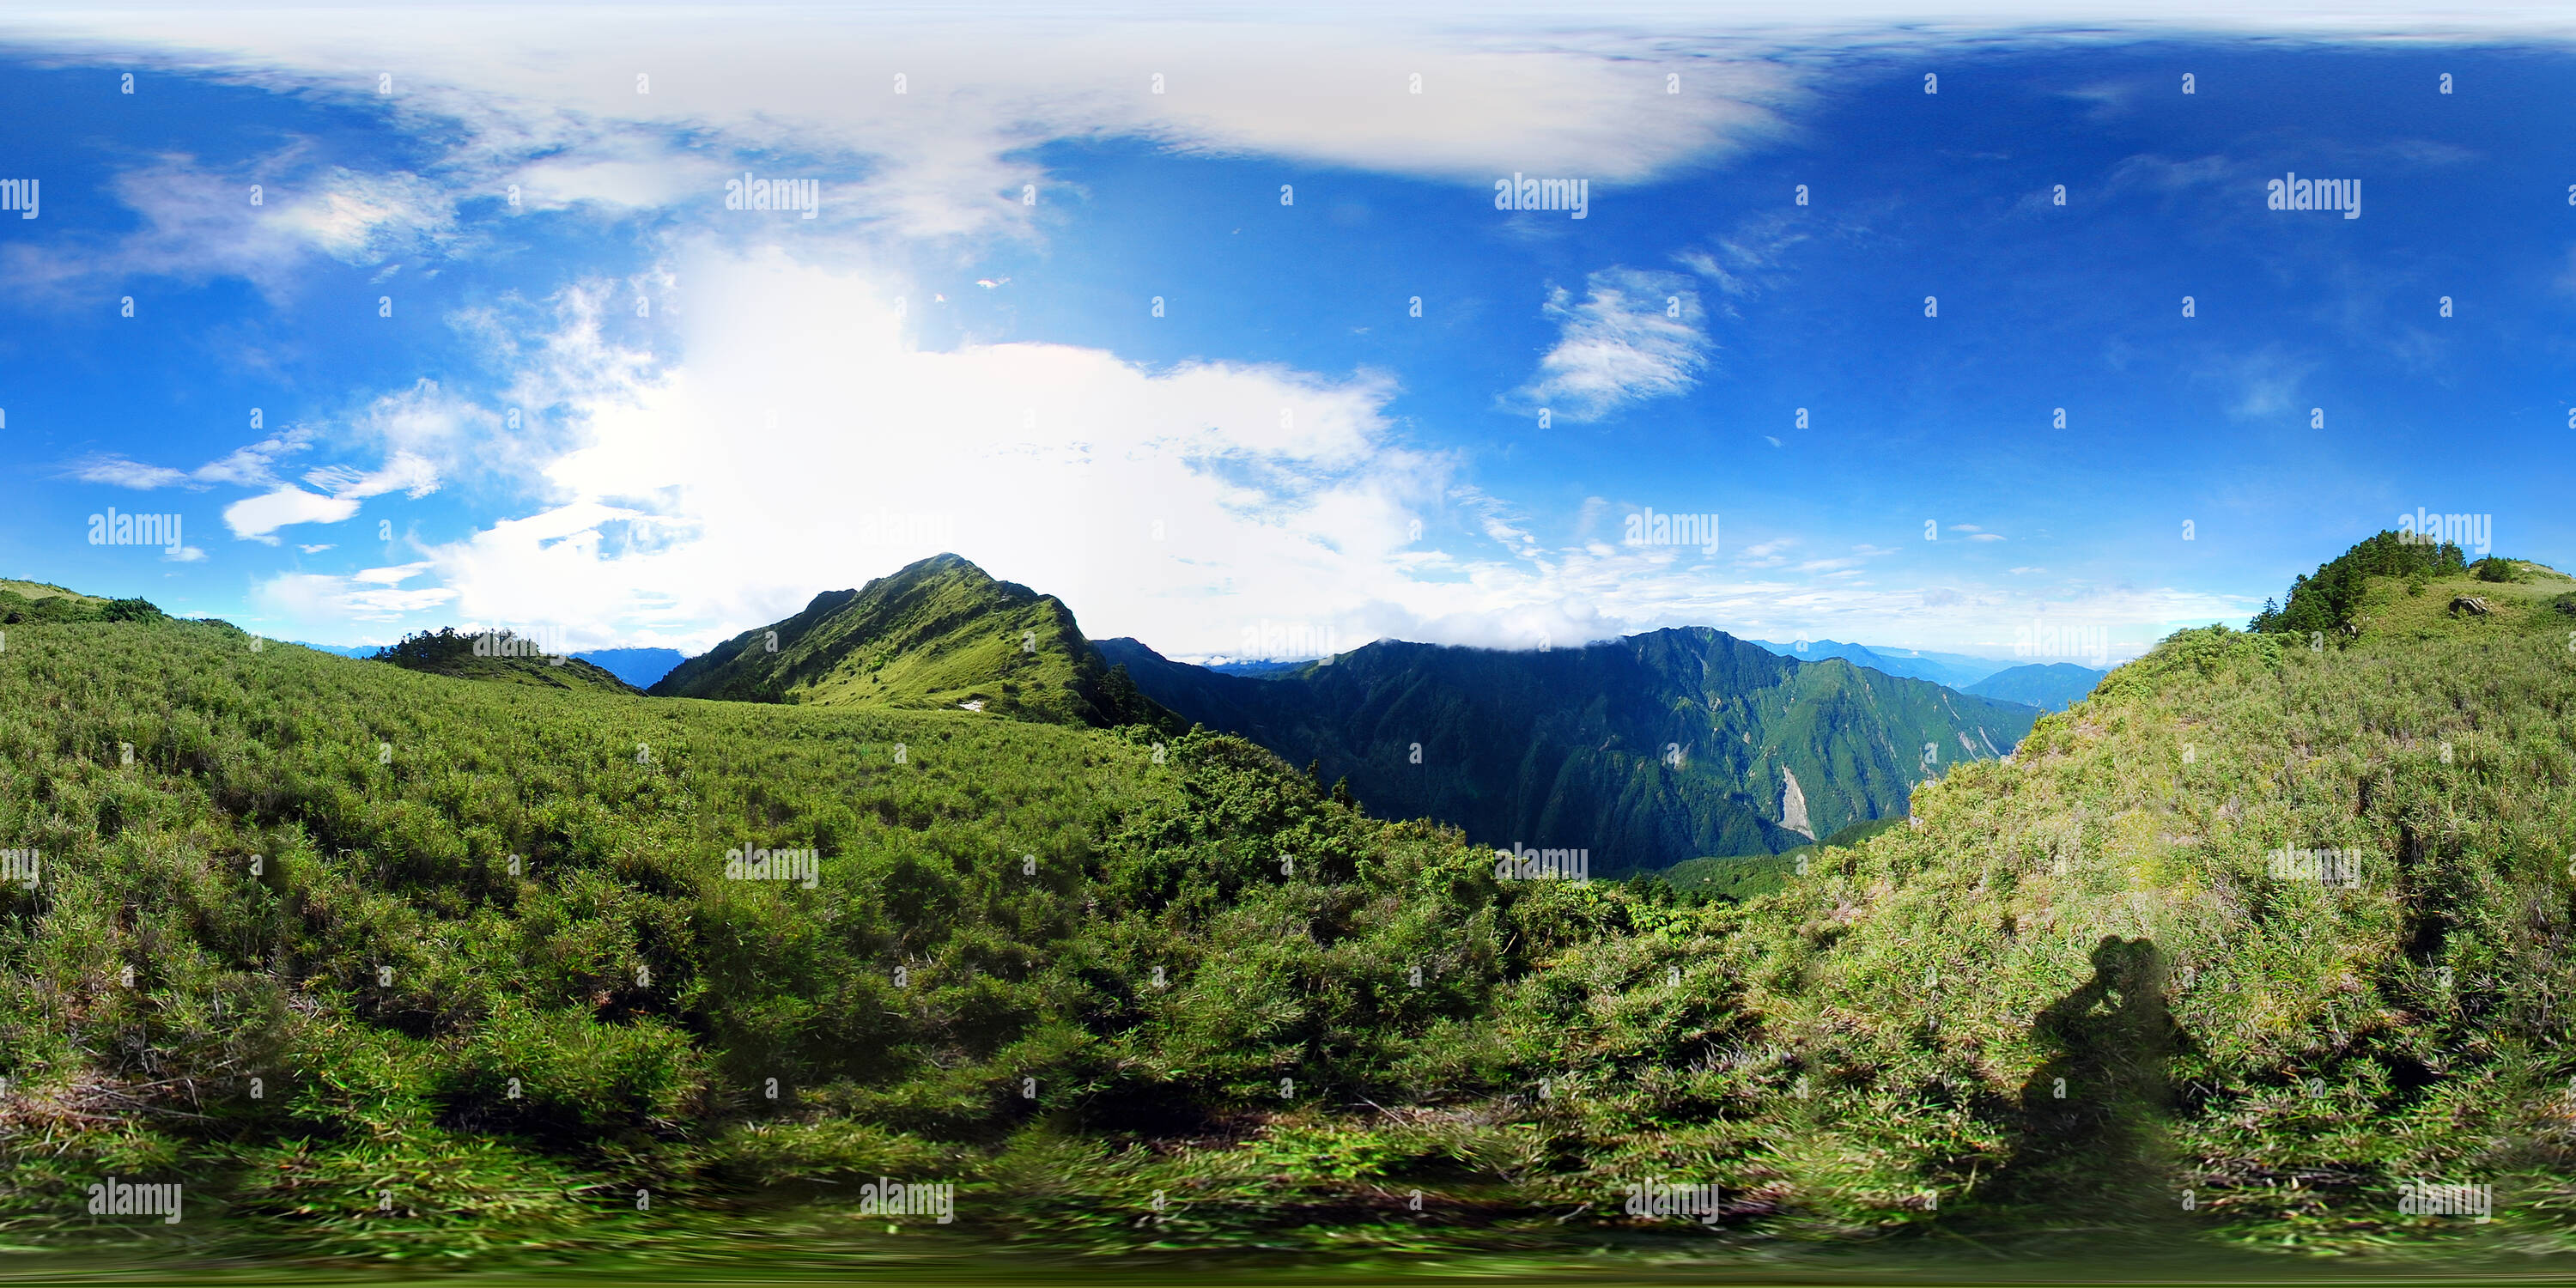 Vista panorámica en 360 grados de Guan Zou Mtn Wan